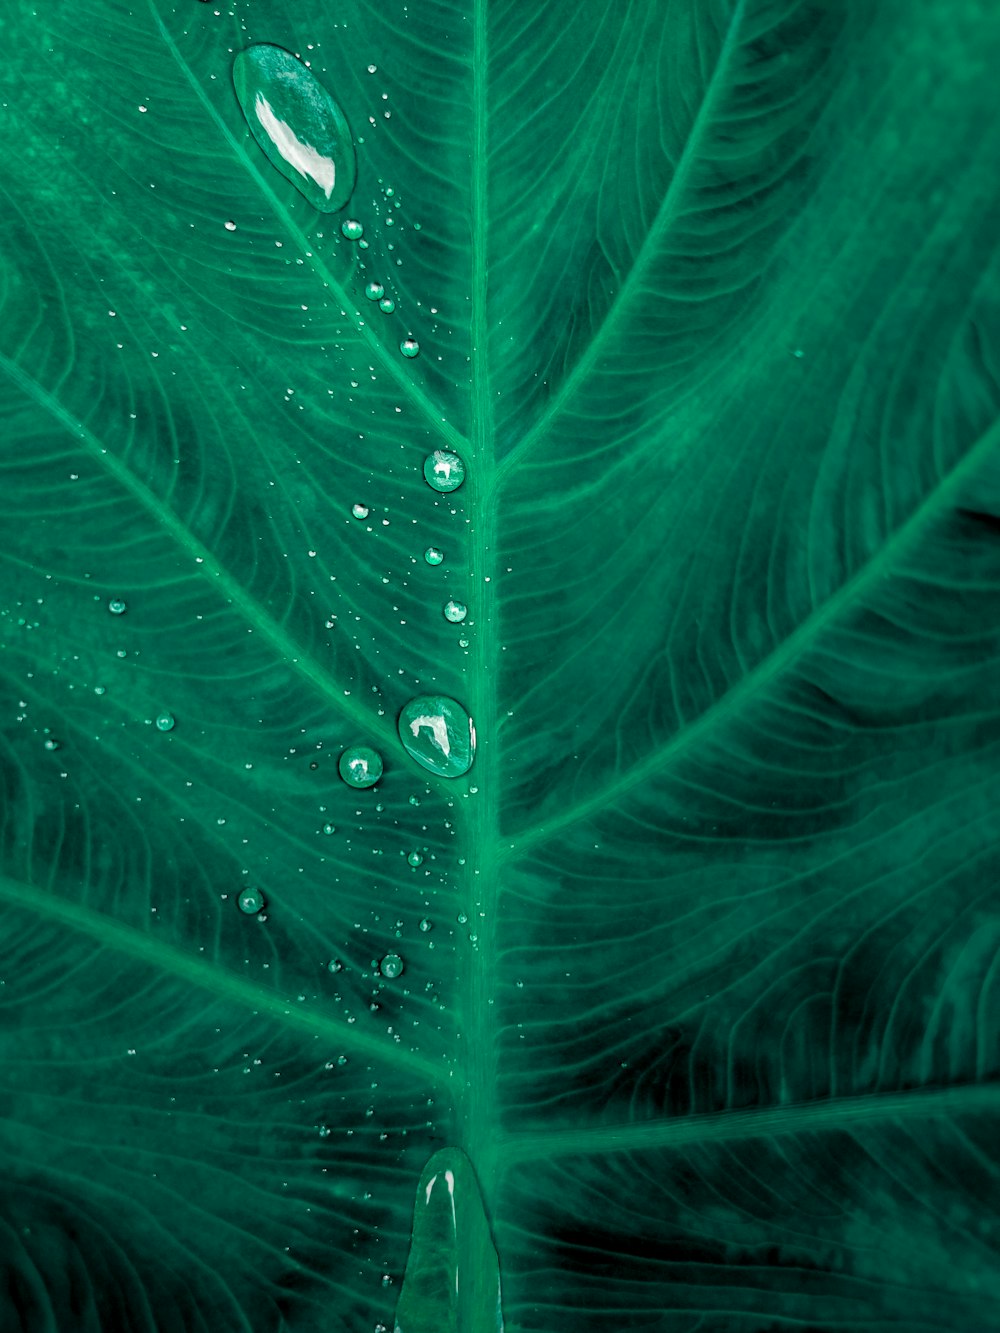 green leaf with dew